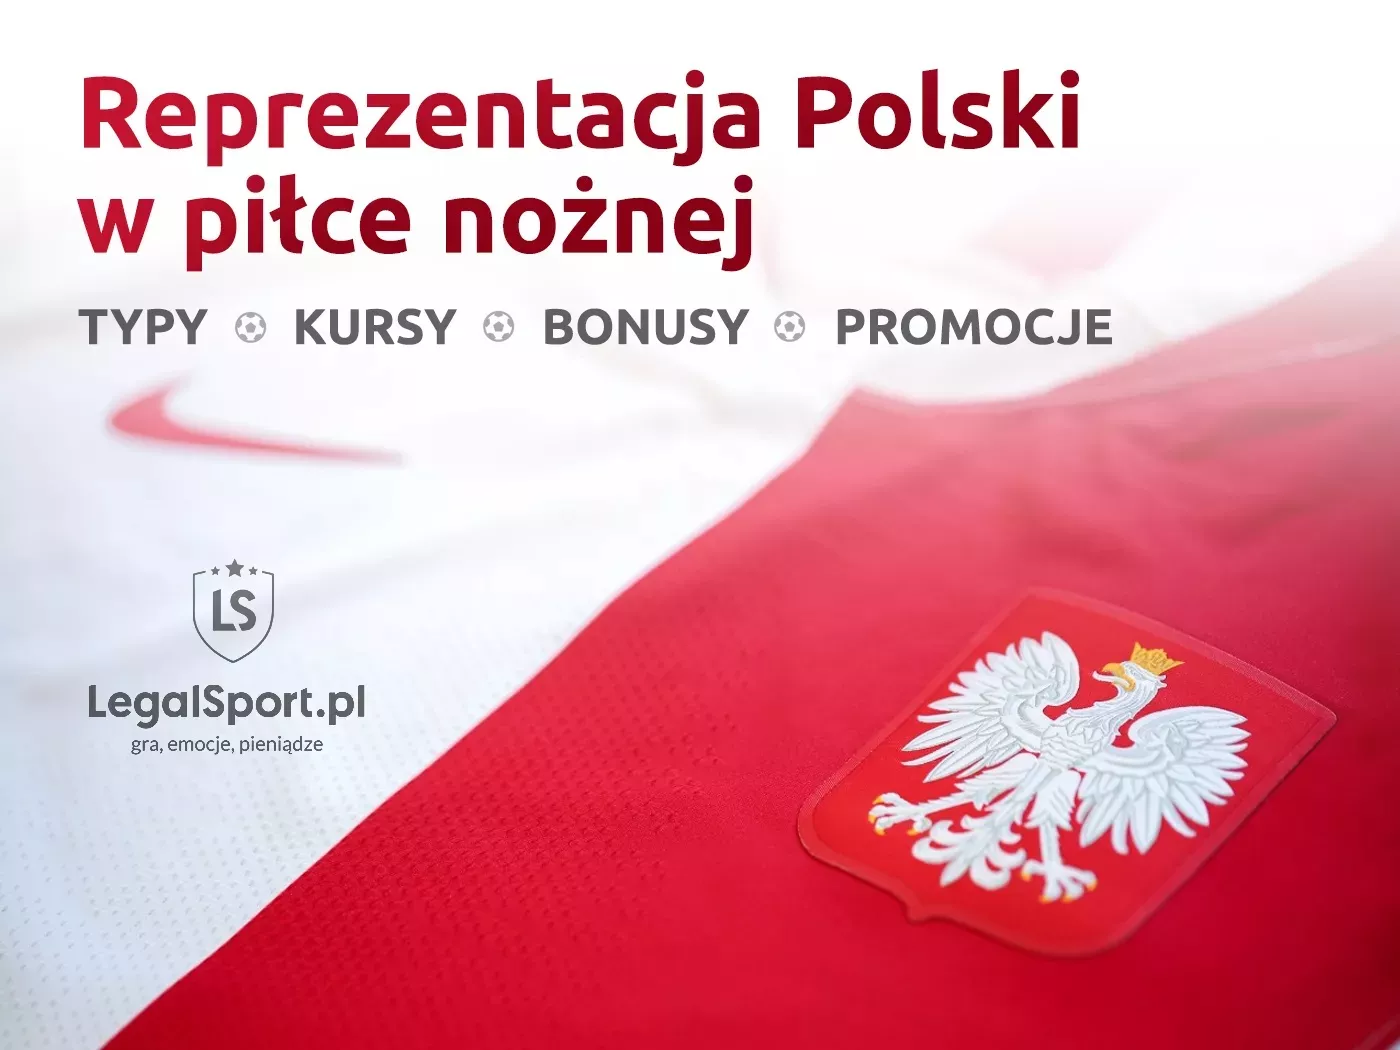 Reprezentacja Polski - zakłady bukmacherskie